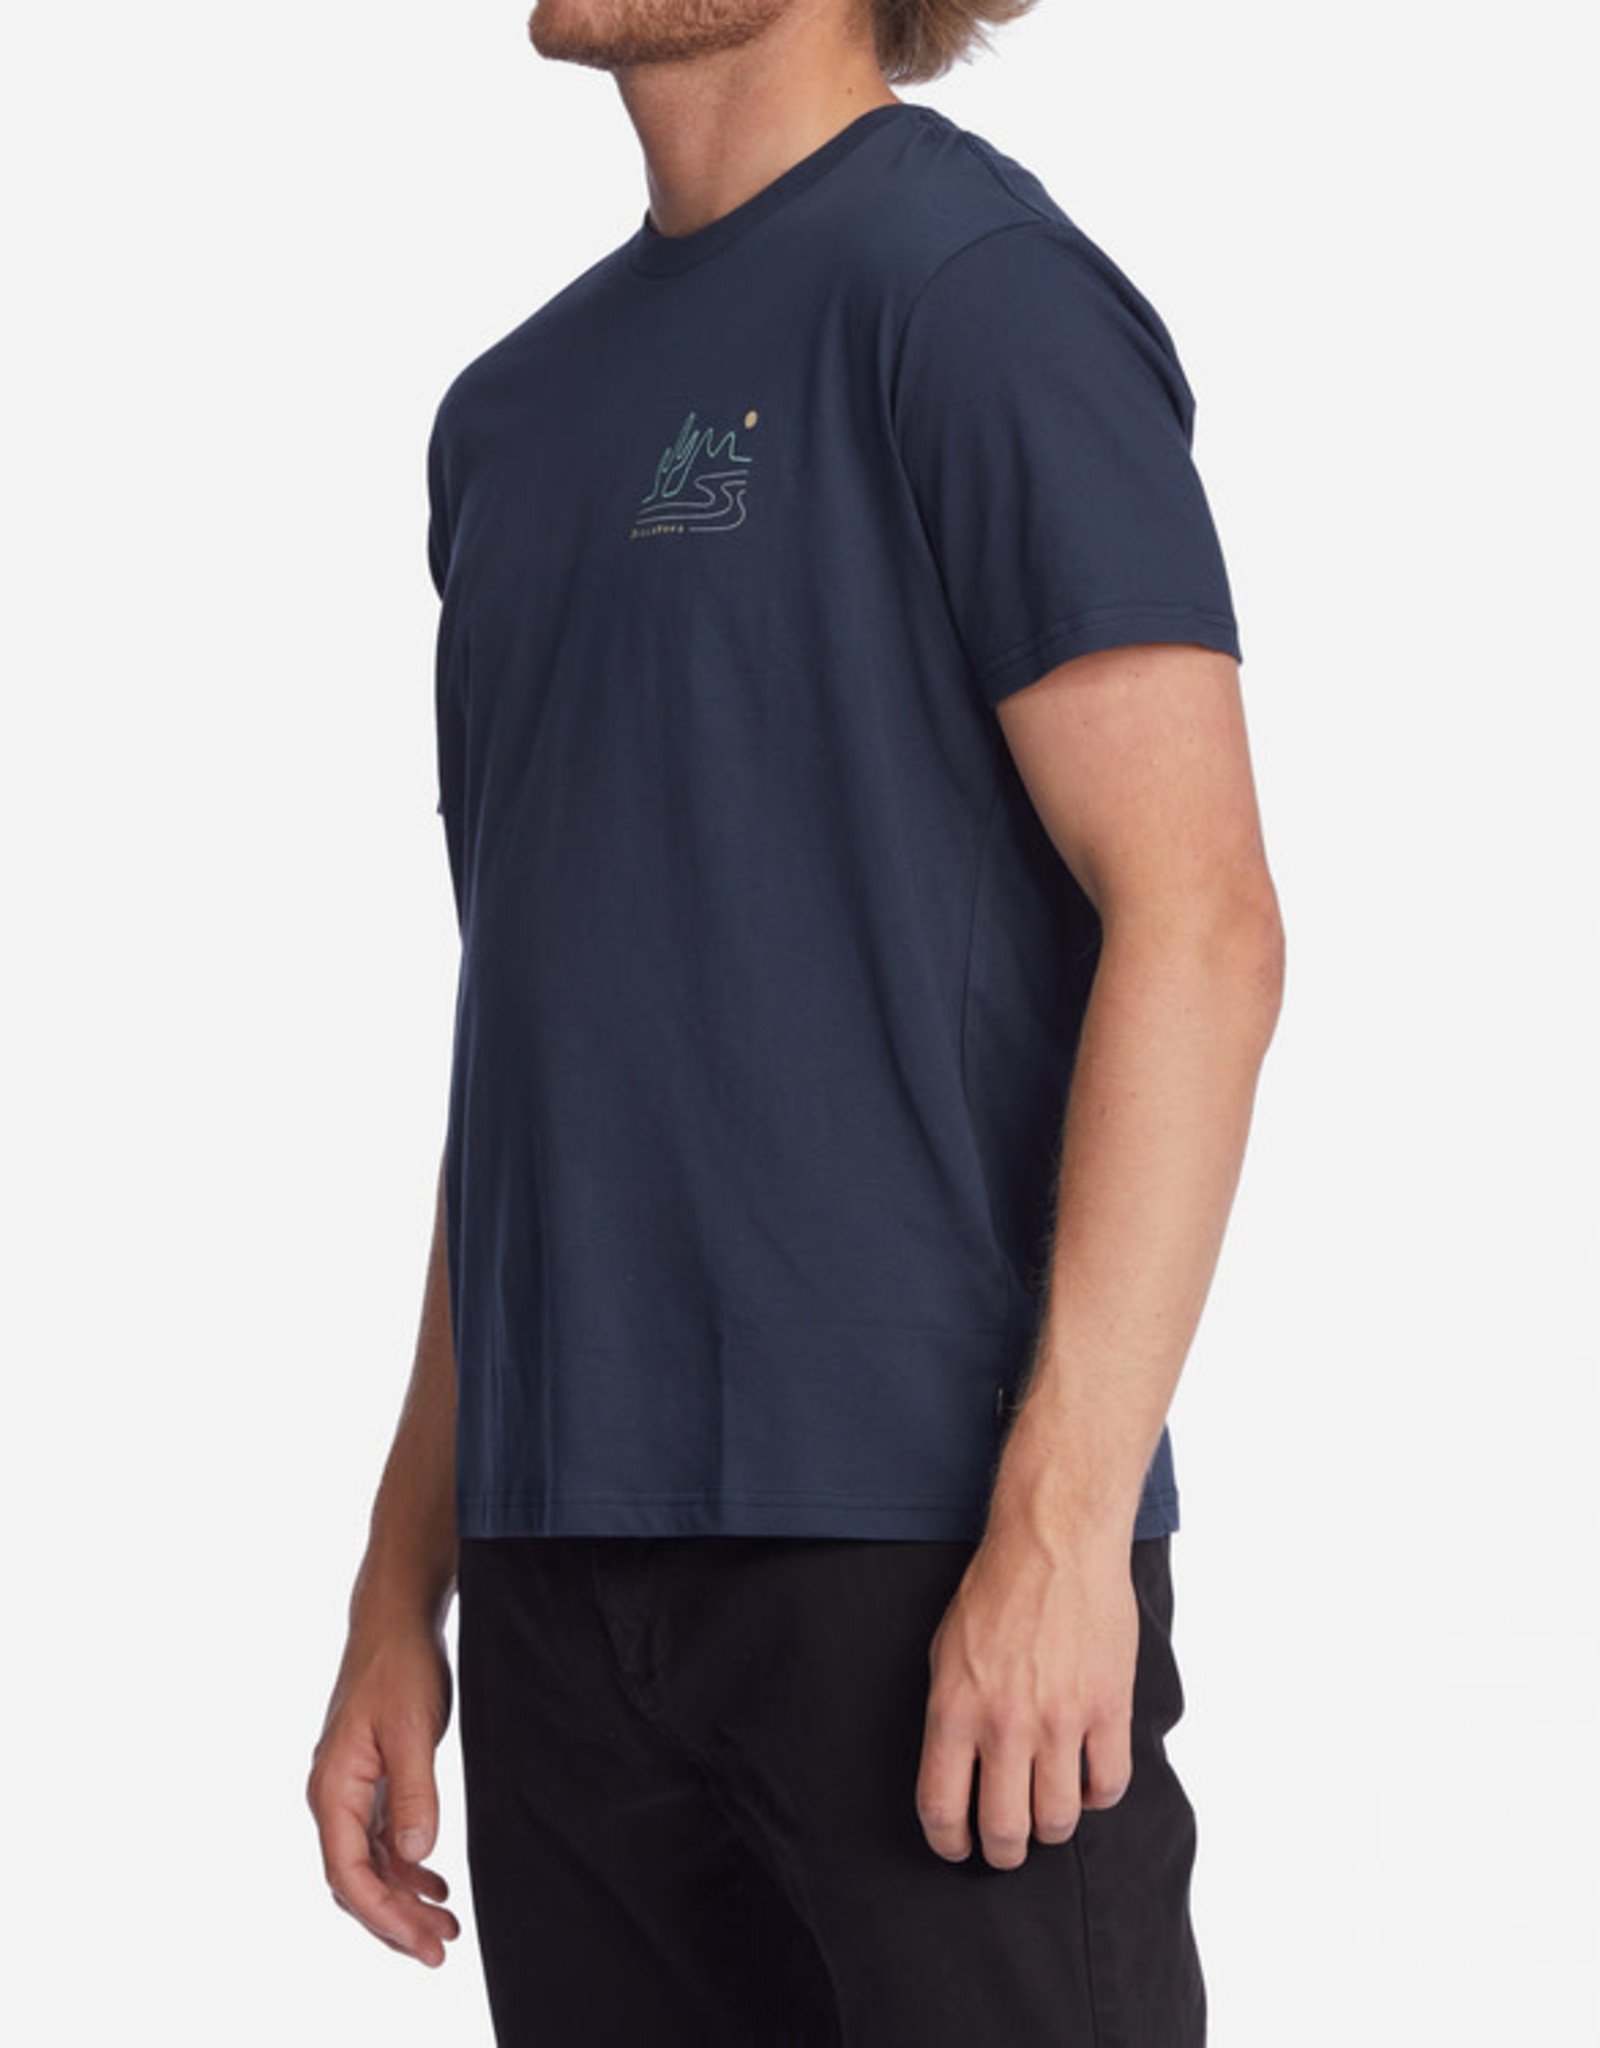 BILLABONG BILLABONG  A/Div Panorama Organic Short Sleeve T-Shirt